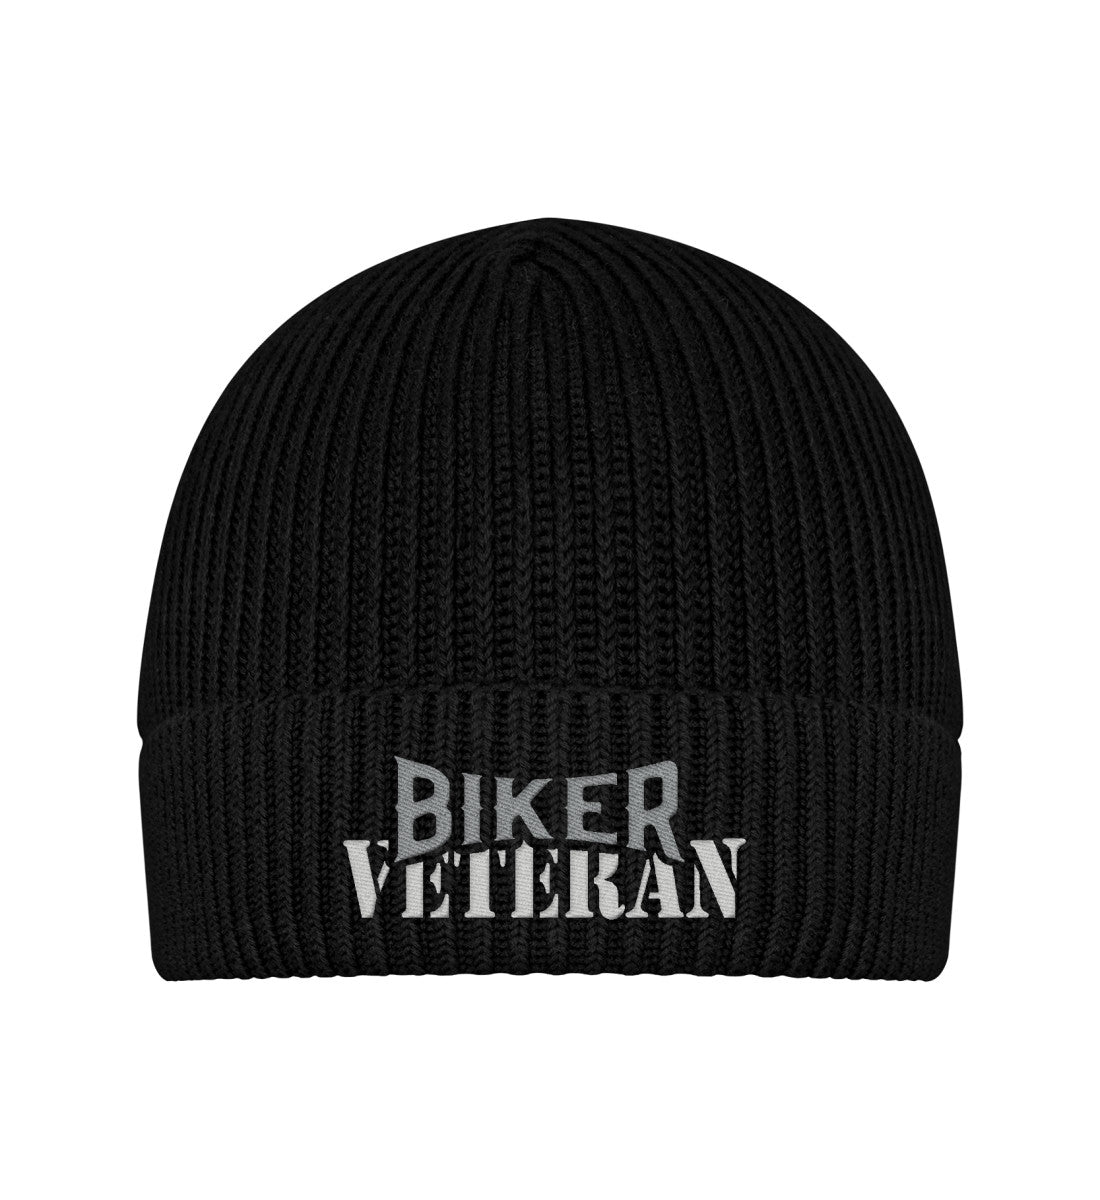 Eine Biker Mütze für Motorradfahrer von Wingbikers mit dem Stick, Biker Veteran, in schwarz.